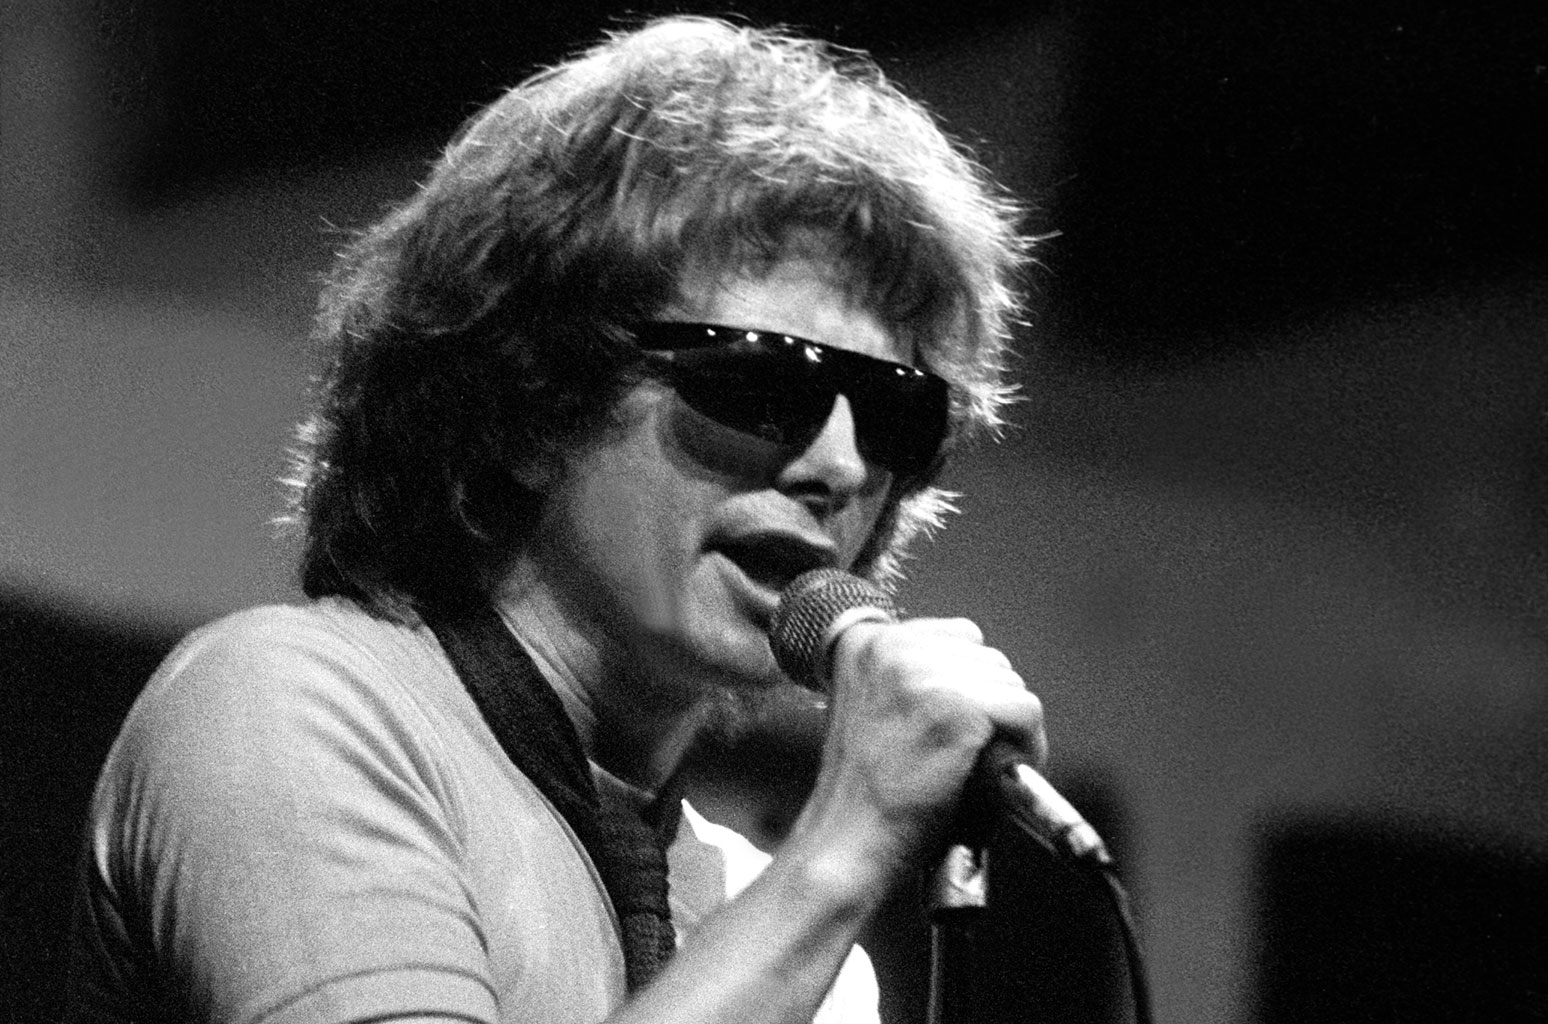 Flamin' Groovies Singer Roy Loney Dies at 73 - www.billboard.com - San Francisco